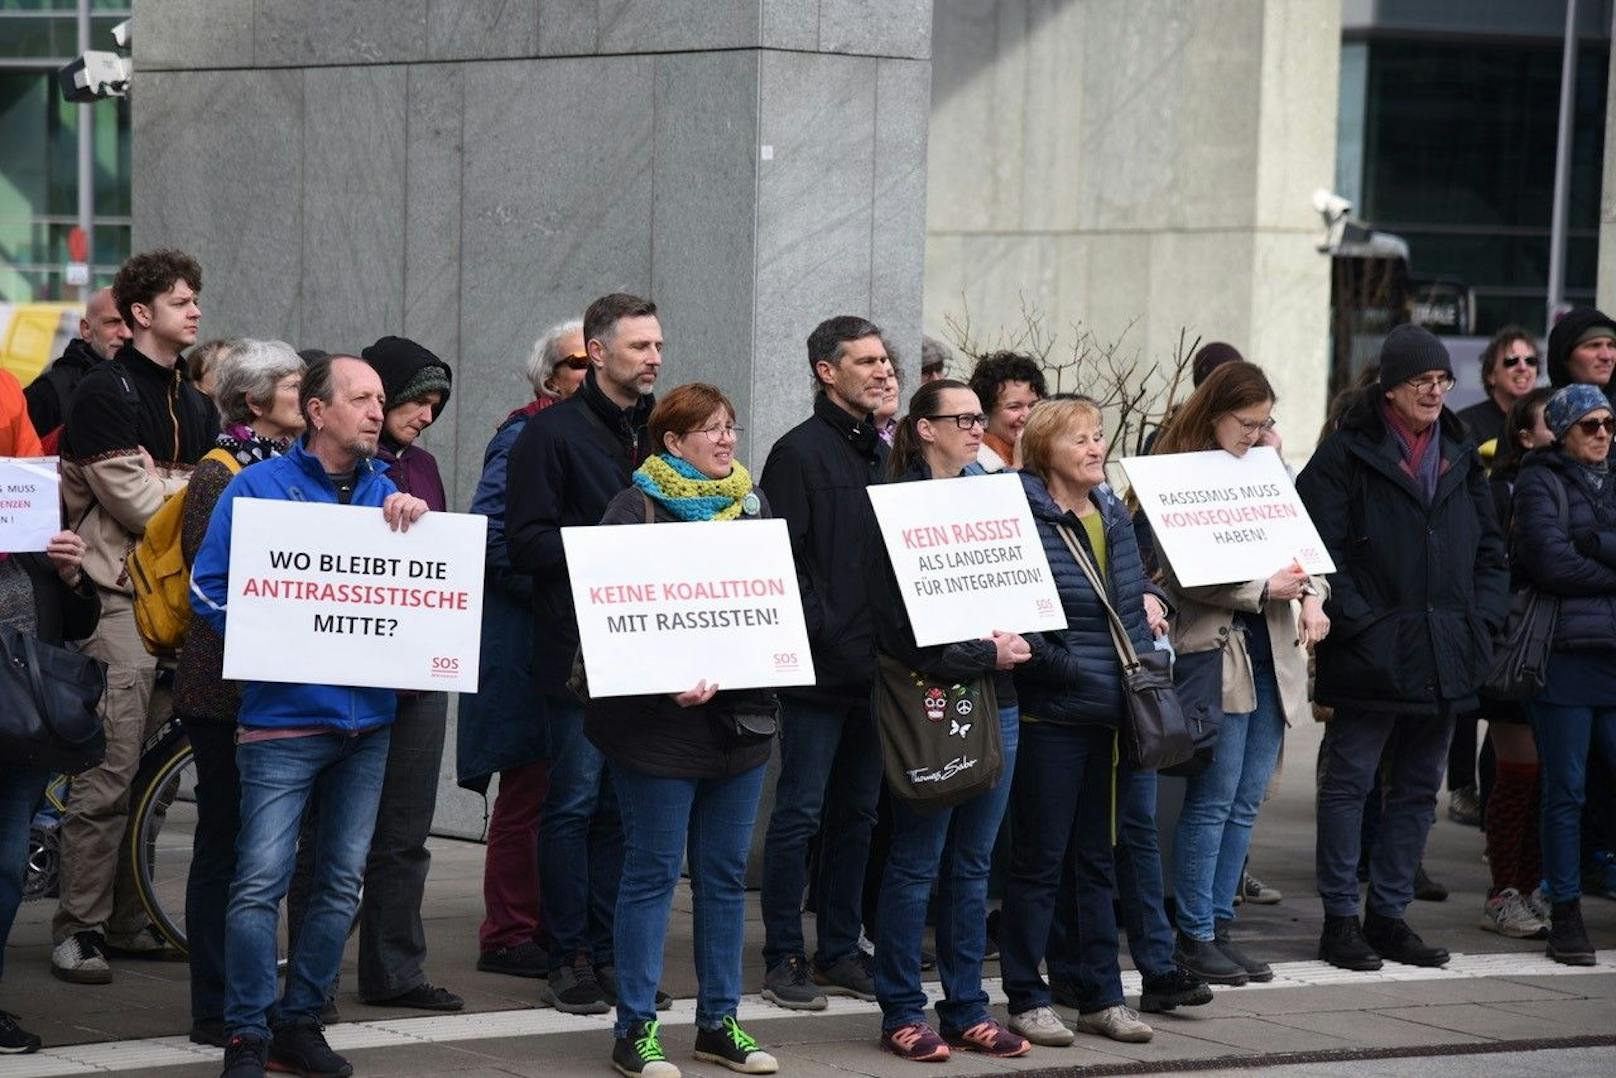 St. Pölten: "Wo bleibt die antirassistische Mitte?", fragt ein Teilnehmer.